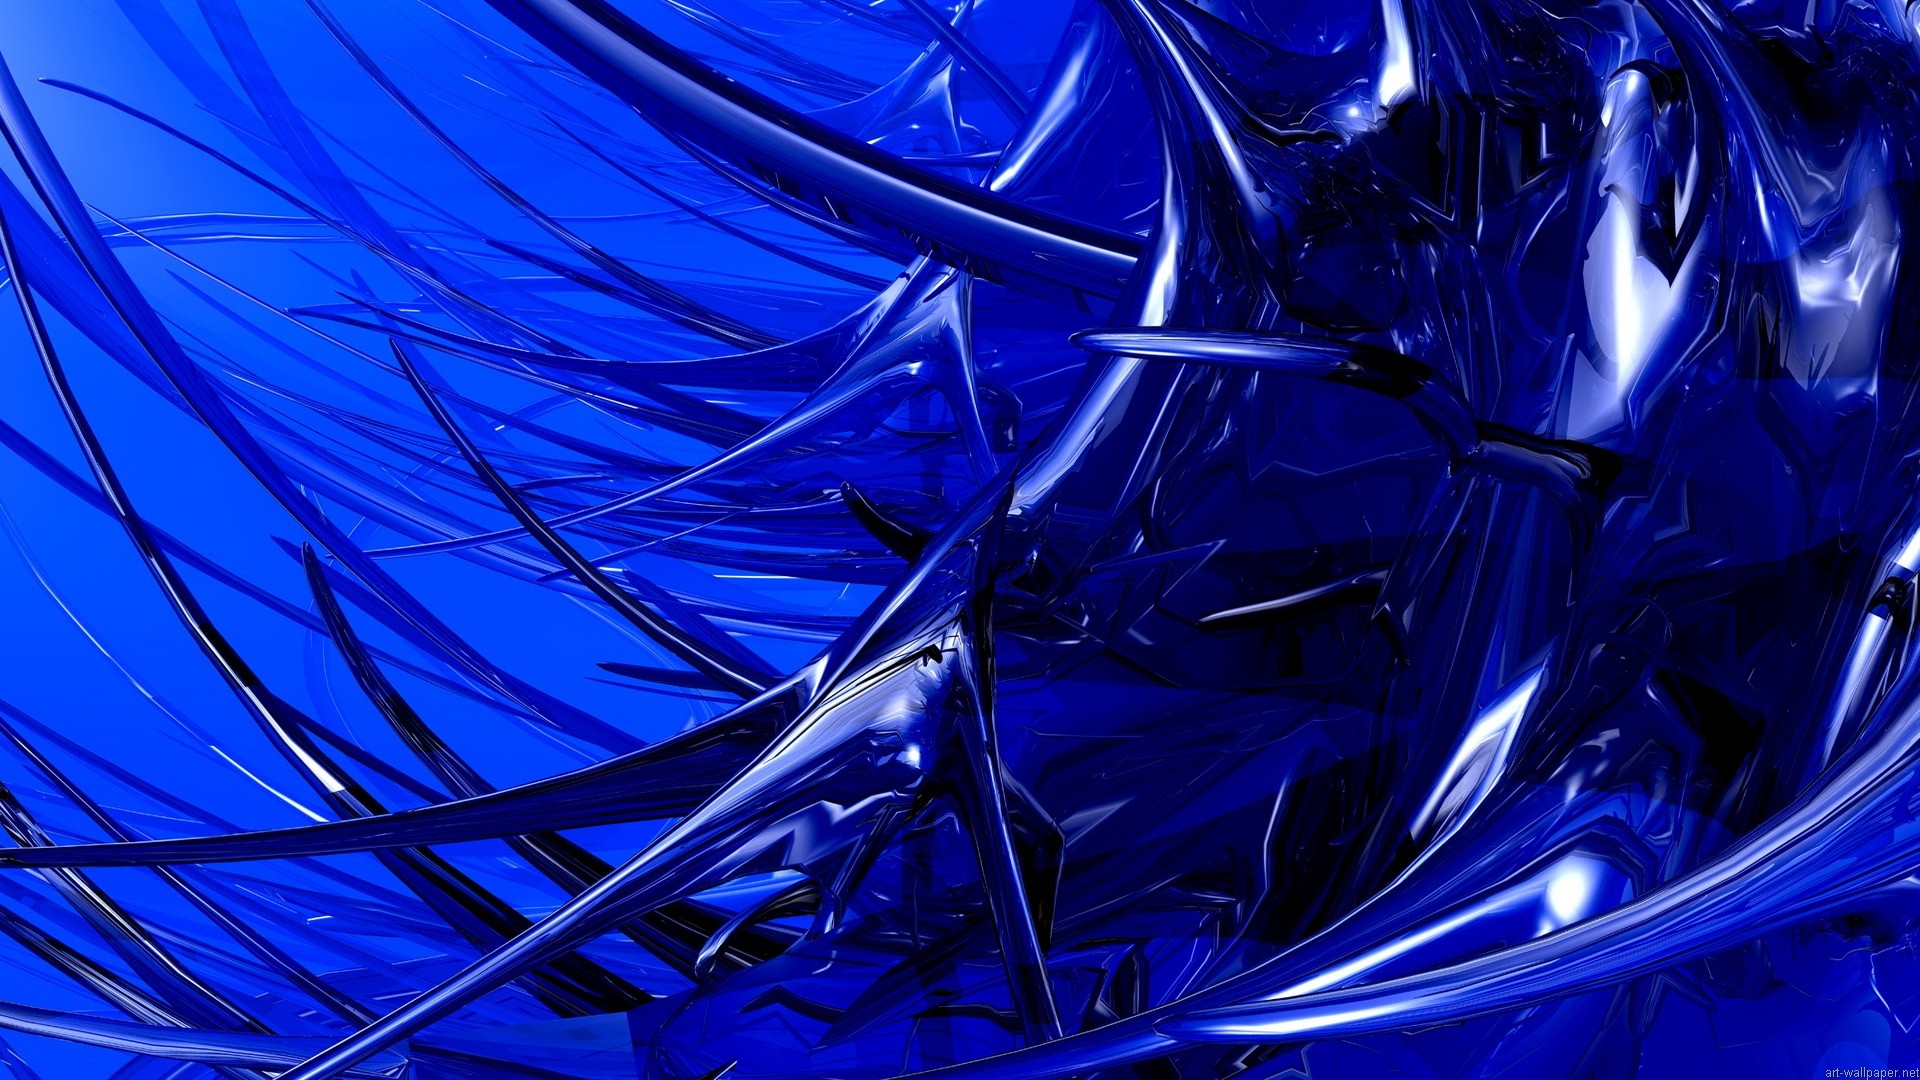 sfondo astratto hd,blu cobalto,blu,blu elettrico,disegno grafico,grafica